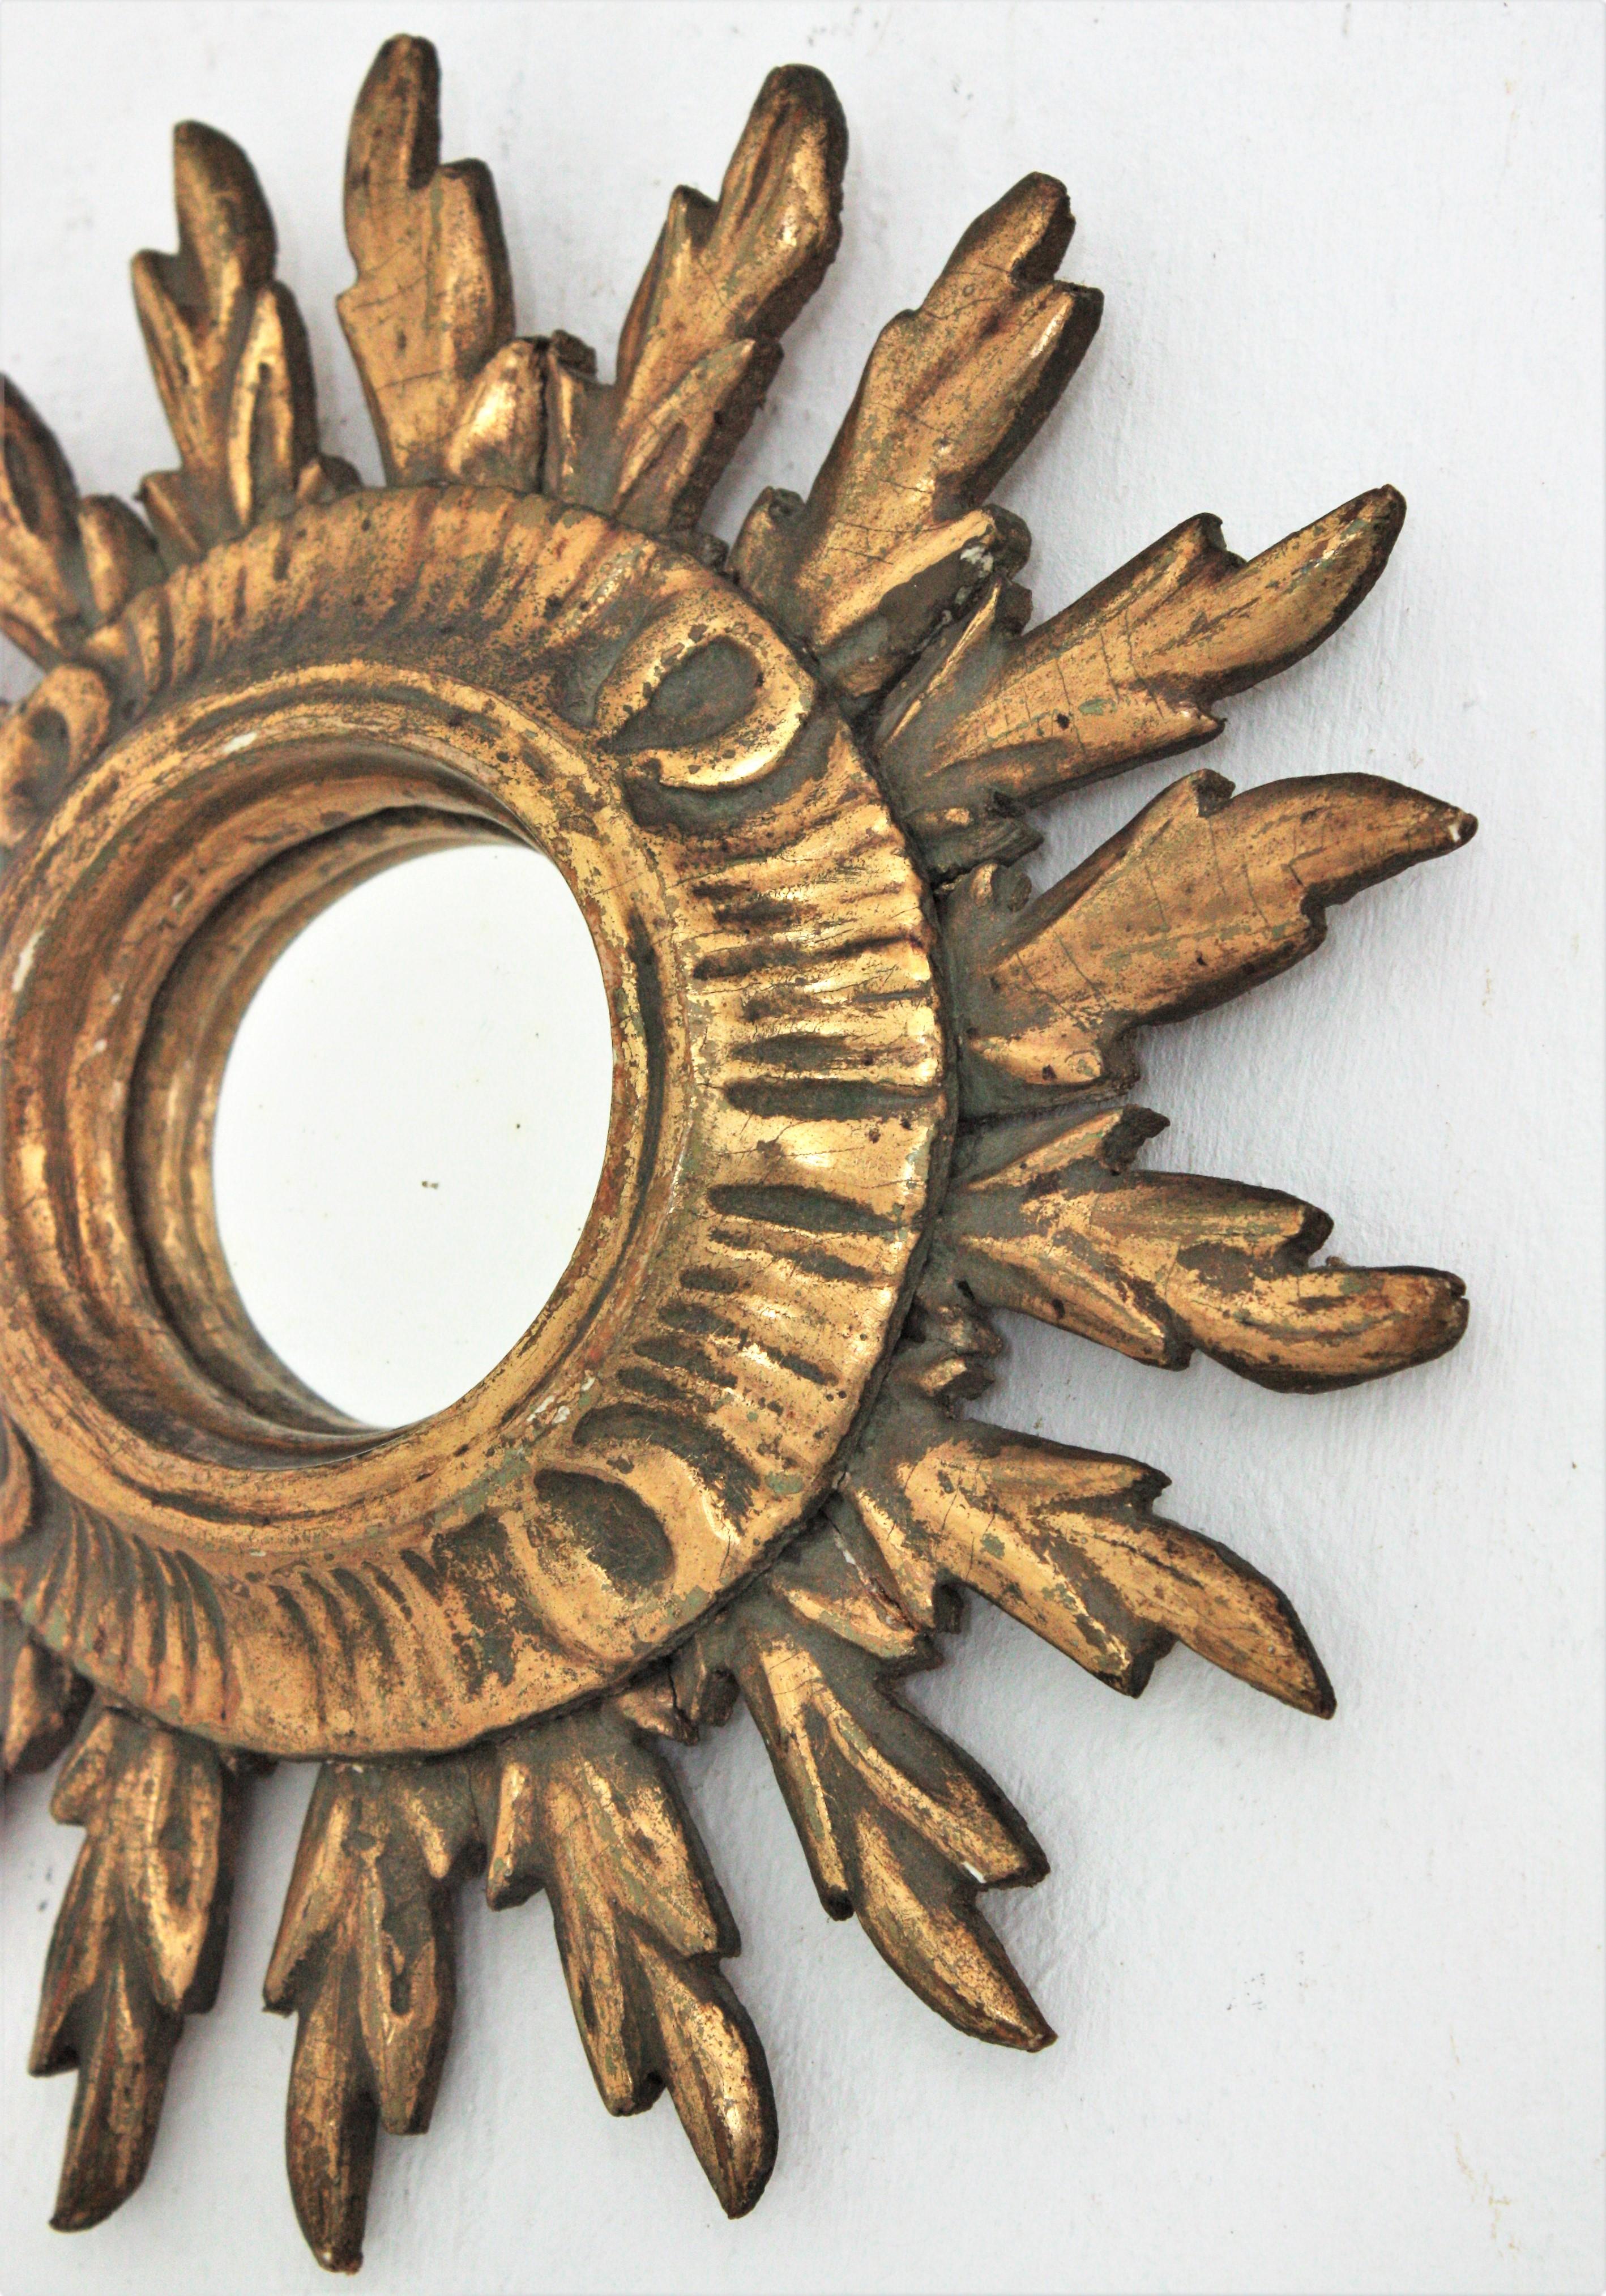 Gesso Sunburst Mini Size Convex Mirror in Baroque Style